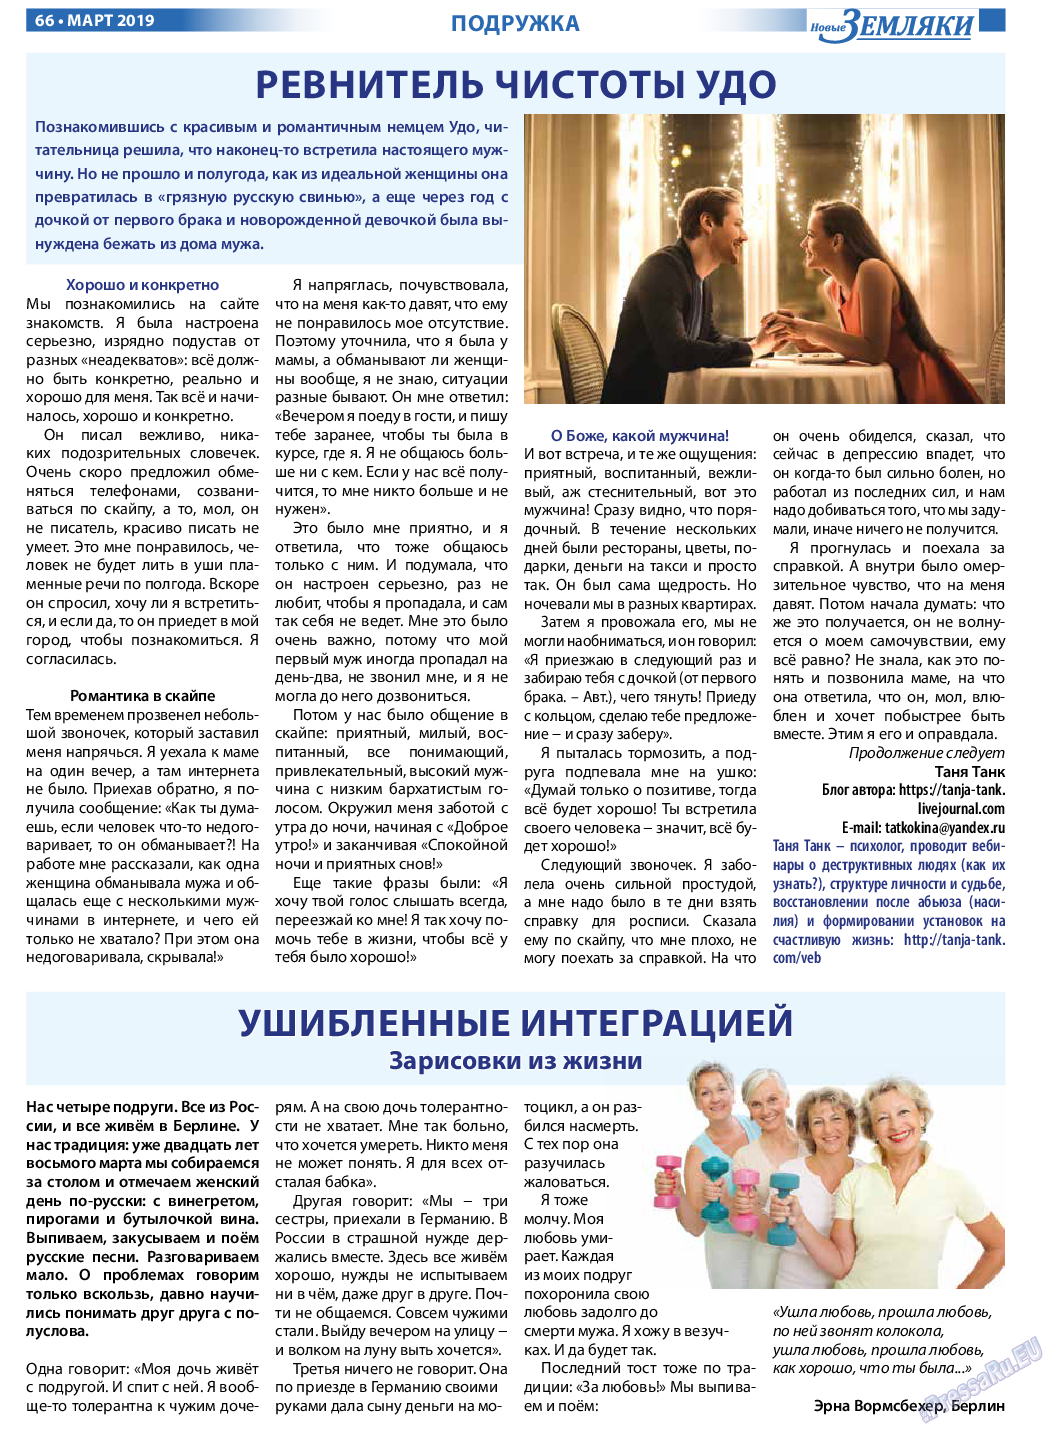 Новые Земляки, газета. 2019 №3 стр.66